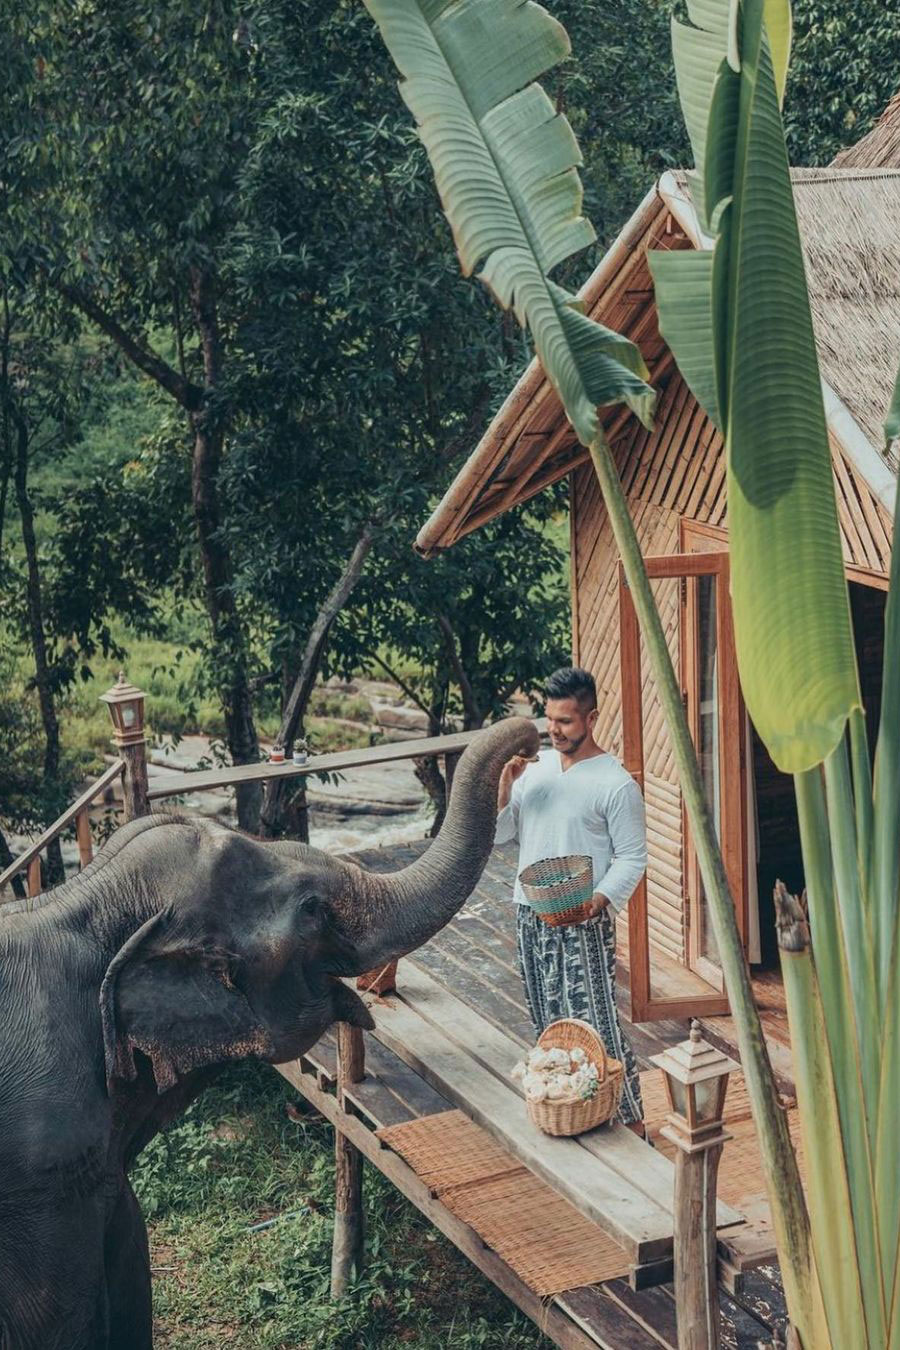 60 minute elephant shoot at Chai Lai Orchid with James de la Cloche